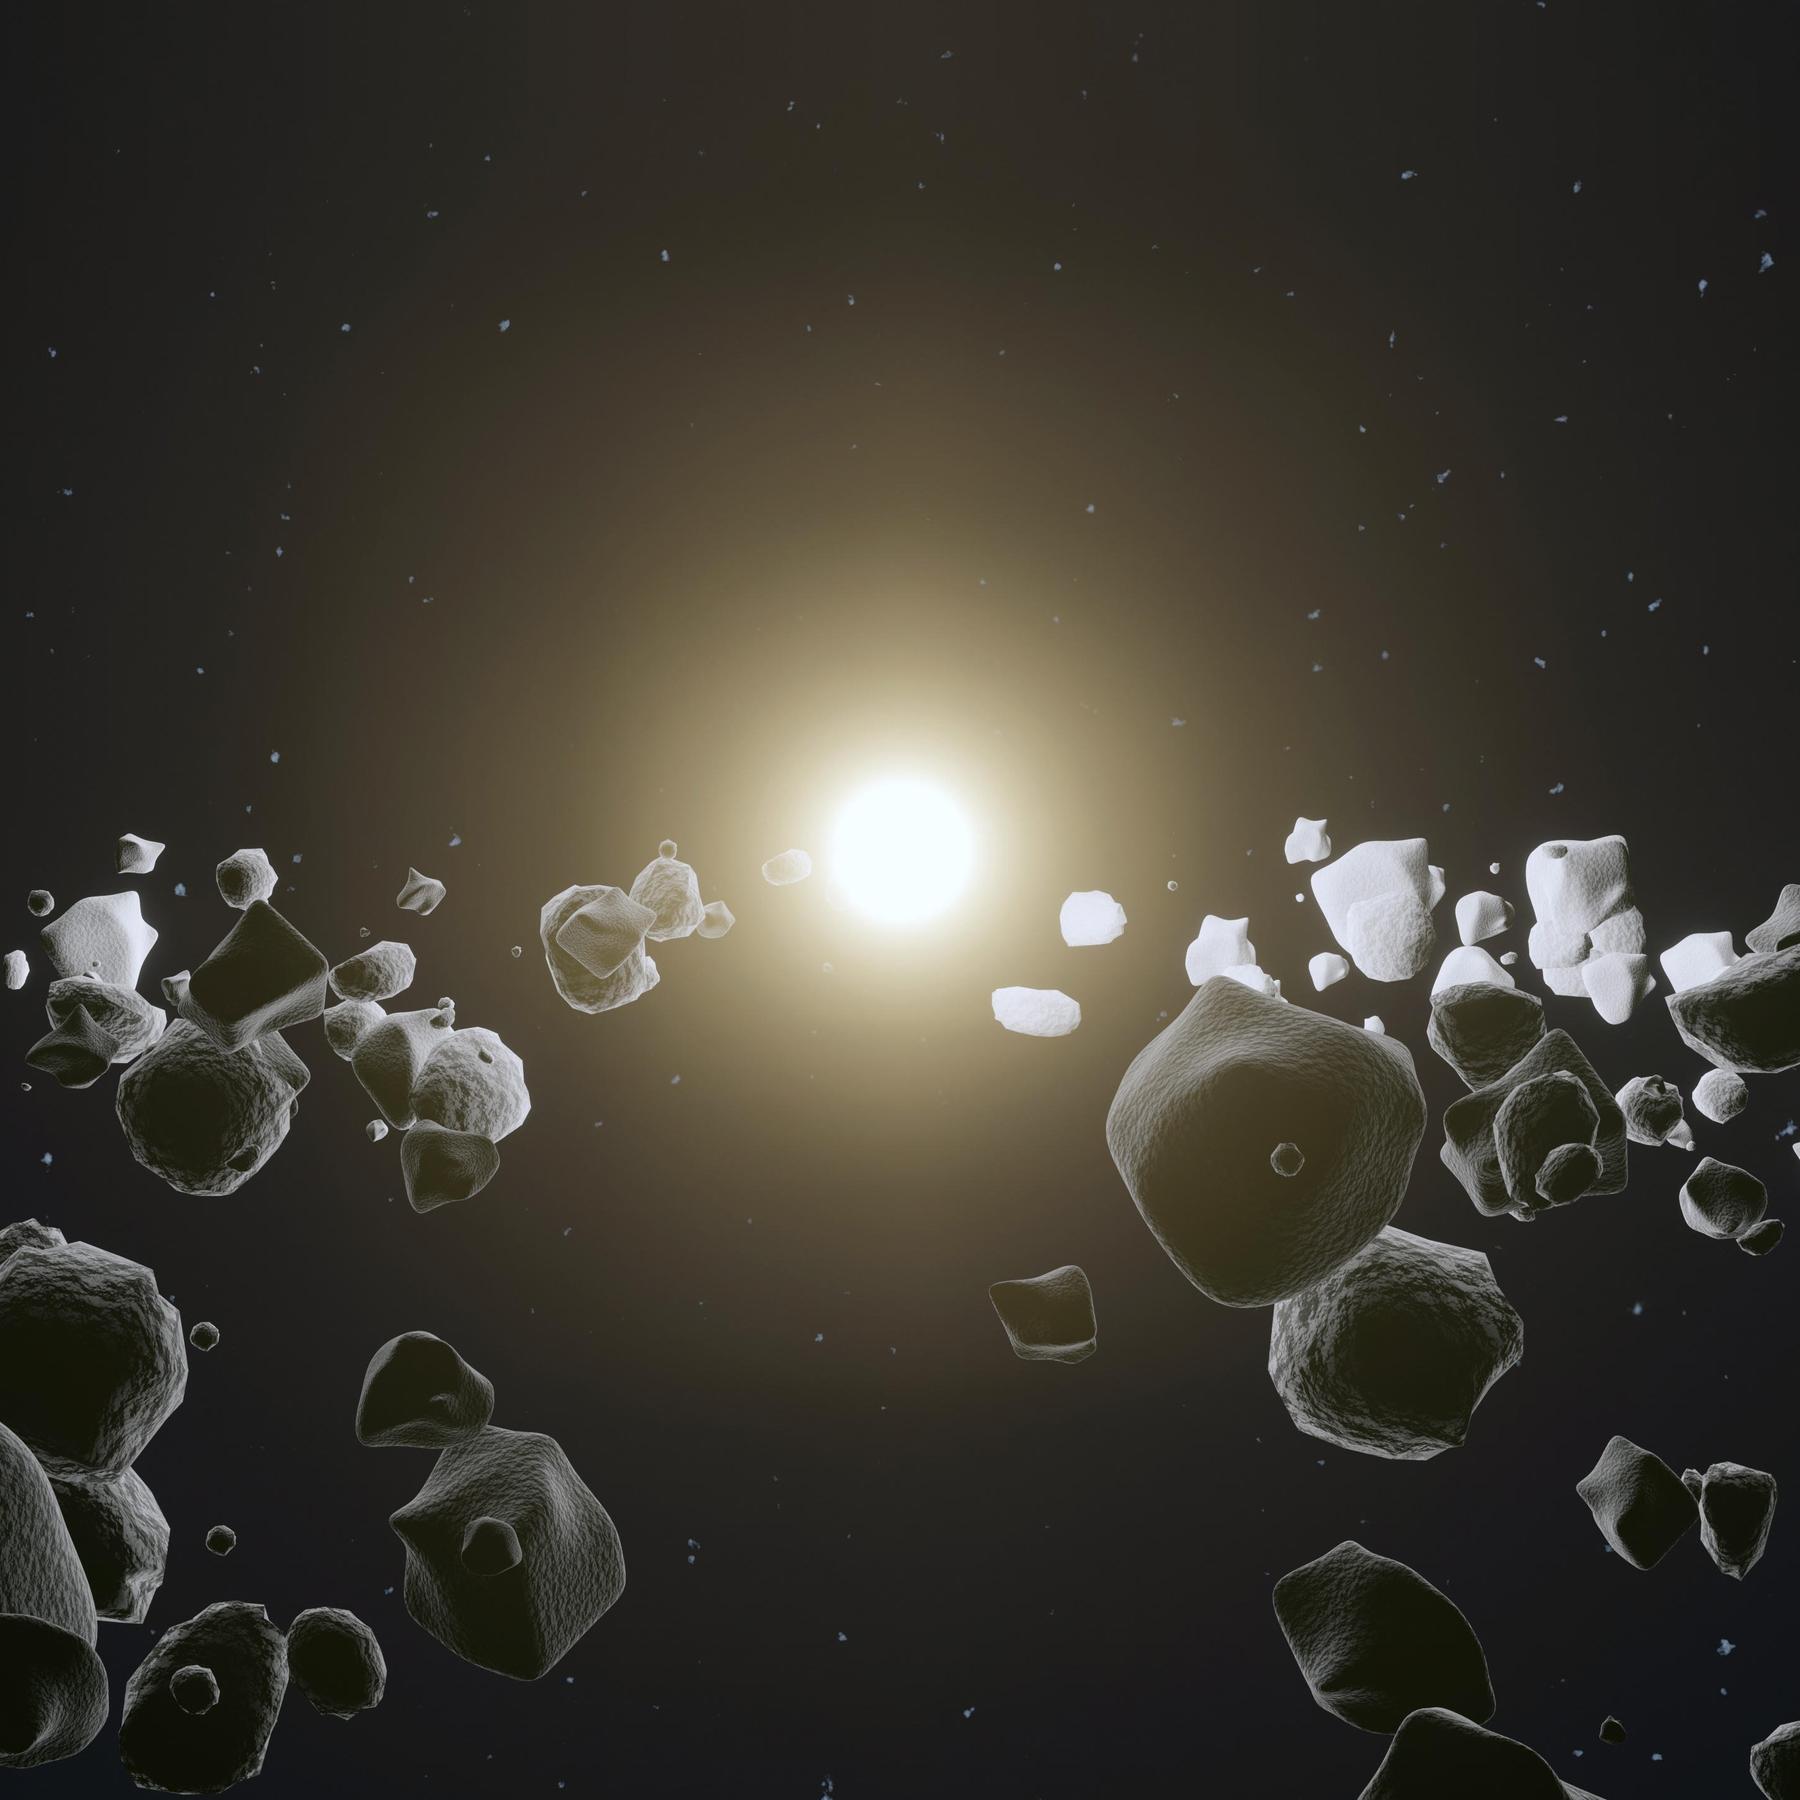 Kollision mit der Erde - Wie funktioniert Asteroiden-Abwehr?